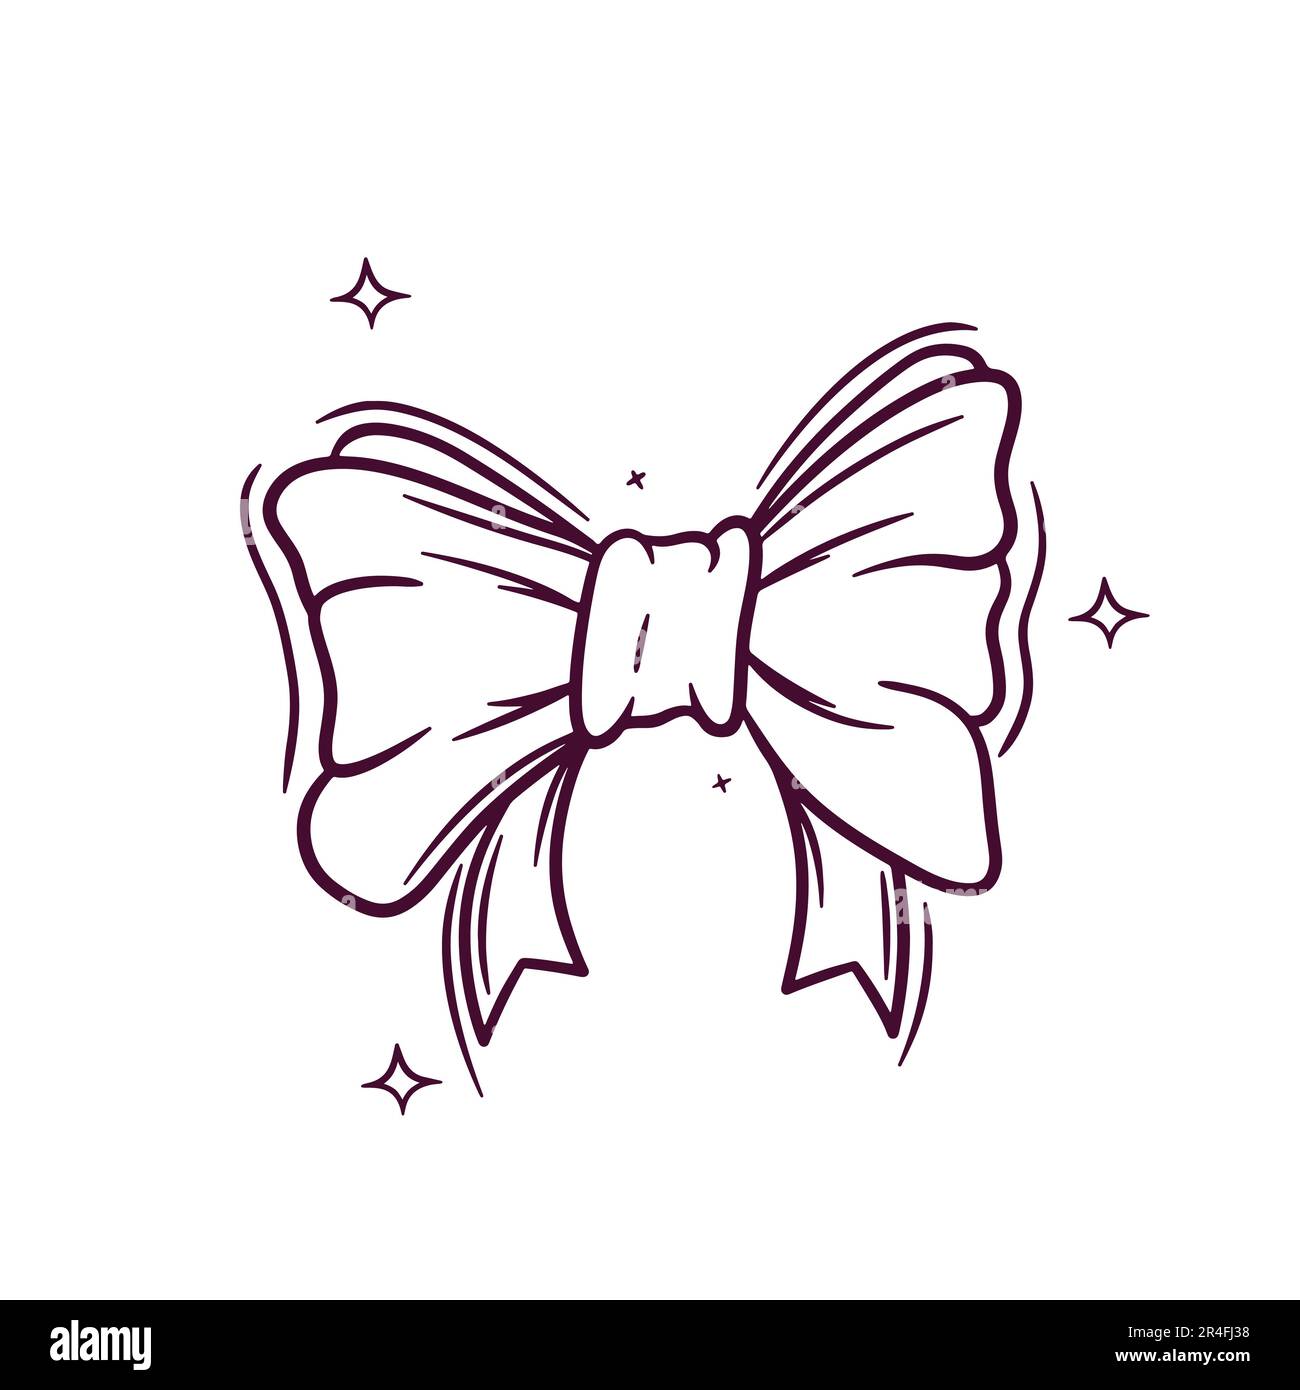 Noeud papillon dessin Banque d'images vectorielles - Page 3 - Alamy